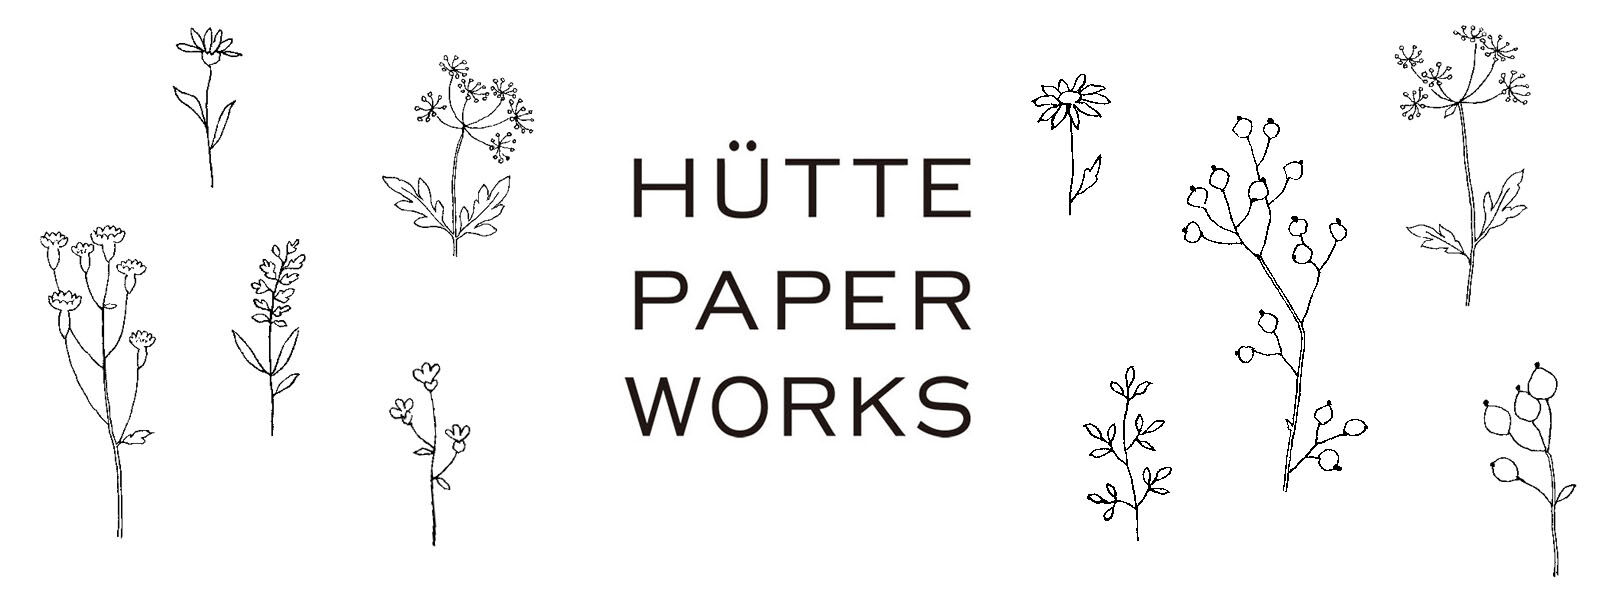 Hütte paper works